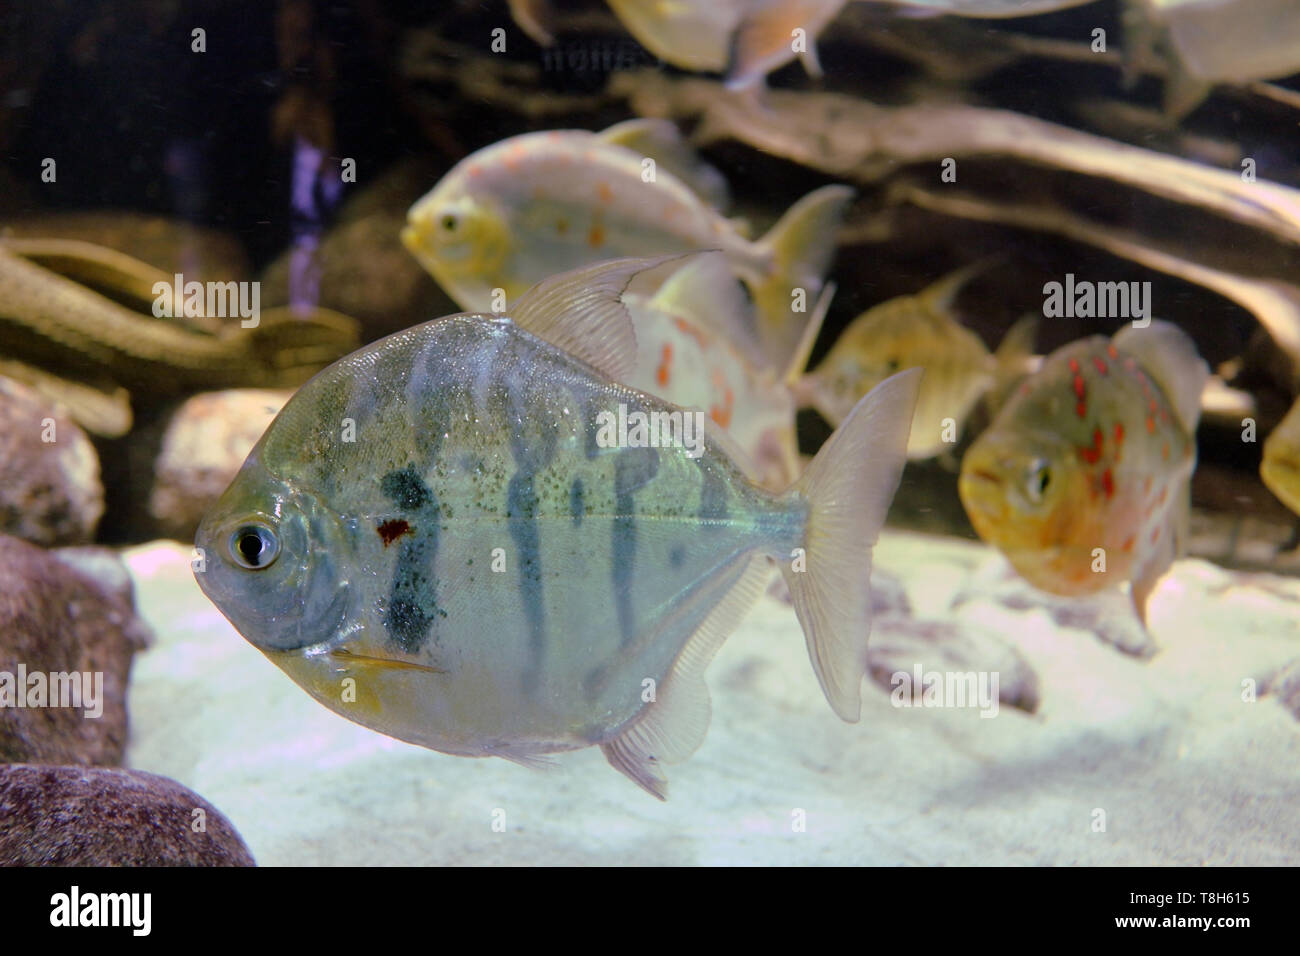 Marine Aquarium pesci sono meravigliosi! Colorati e affascinanti e i pesci di mare sono già diventati compagni di diverse famiglie di praticare aquarism. Foto Stock